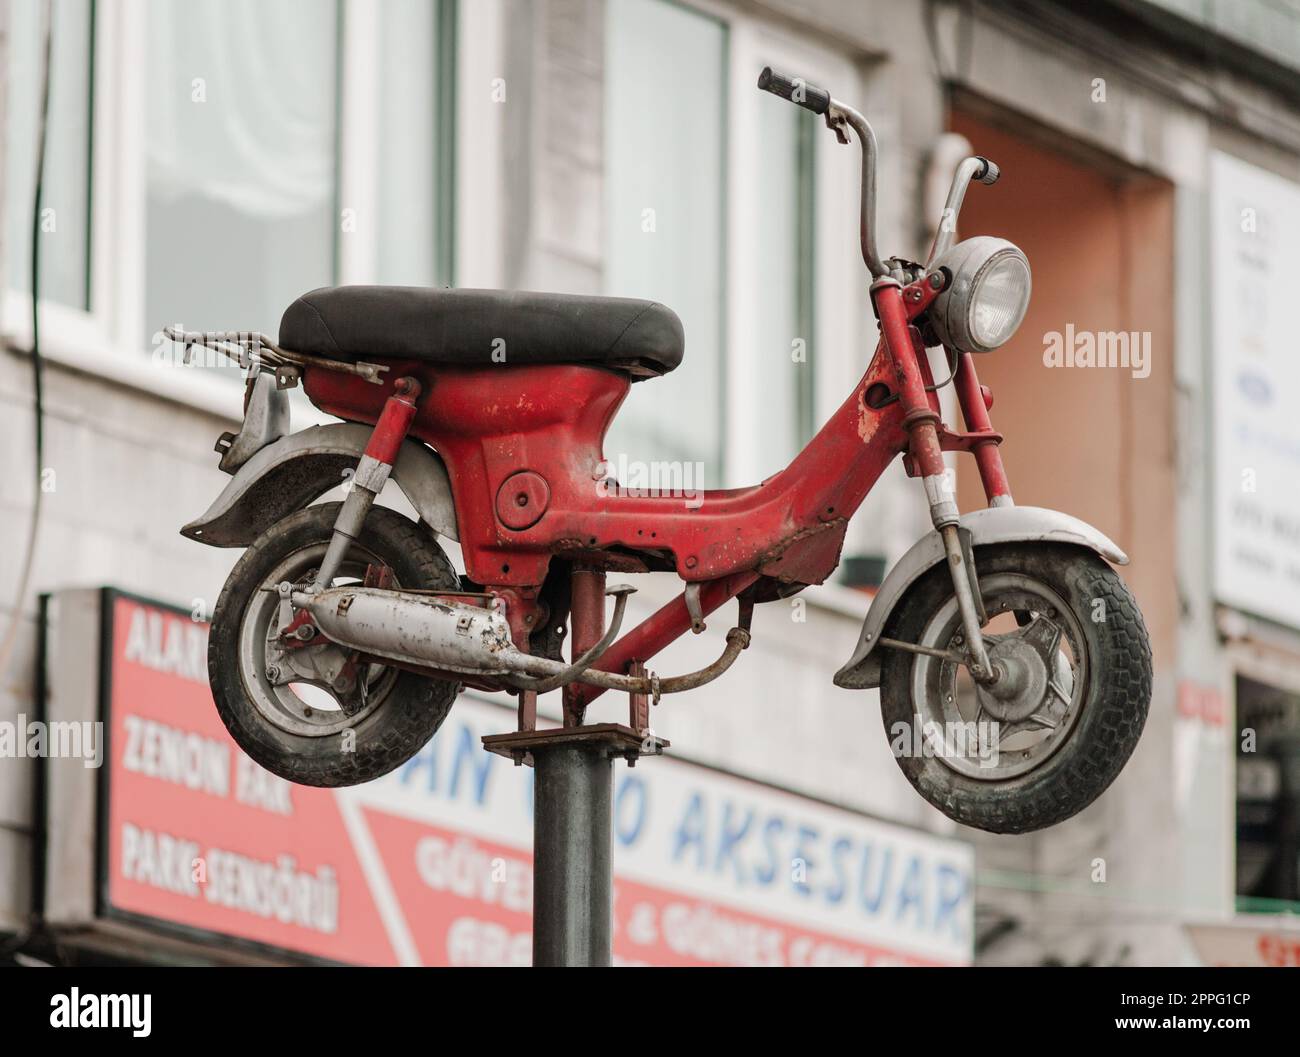 Ein Moped im Retro-Stil wird zu Werbezwecken auf einem Regal montiert  Stockfotografie - Alamy